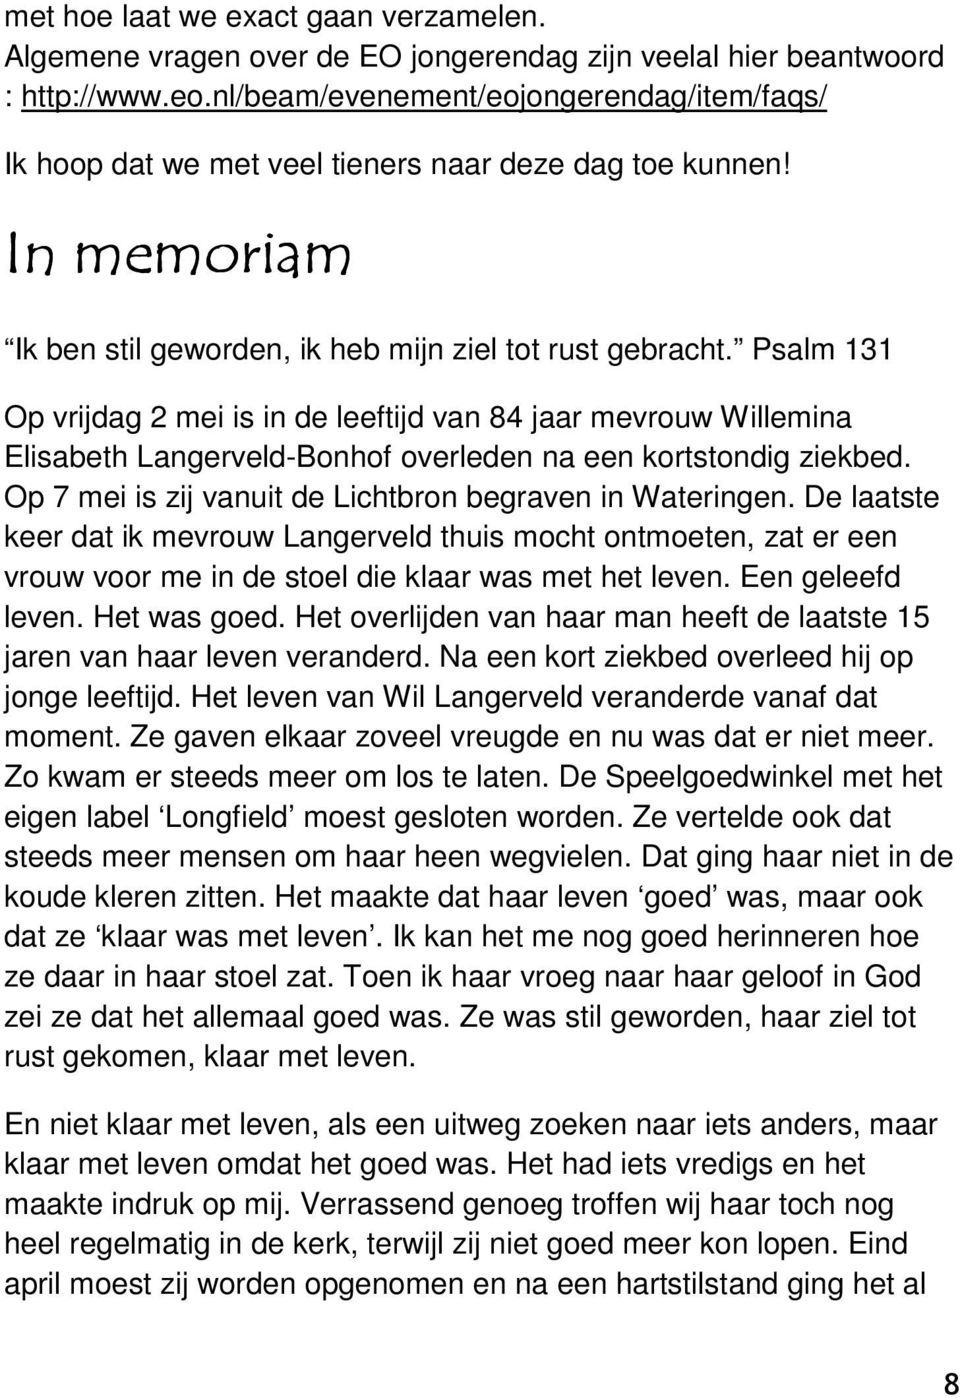 Psalm 131 Op vrijdag 2 mei is in de leeftijd van 84 jaar mevrouw Willemina Elisabeth Langerveld-Bonhof overleden na een kortstondig ziekbed. Op 7 mei is zij vanuit de Lichtbron begraven in Wateringen.